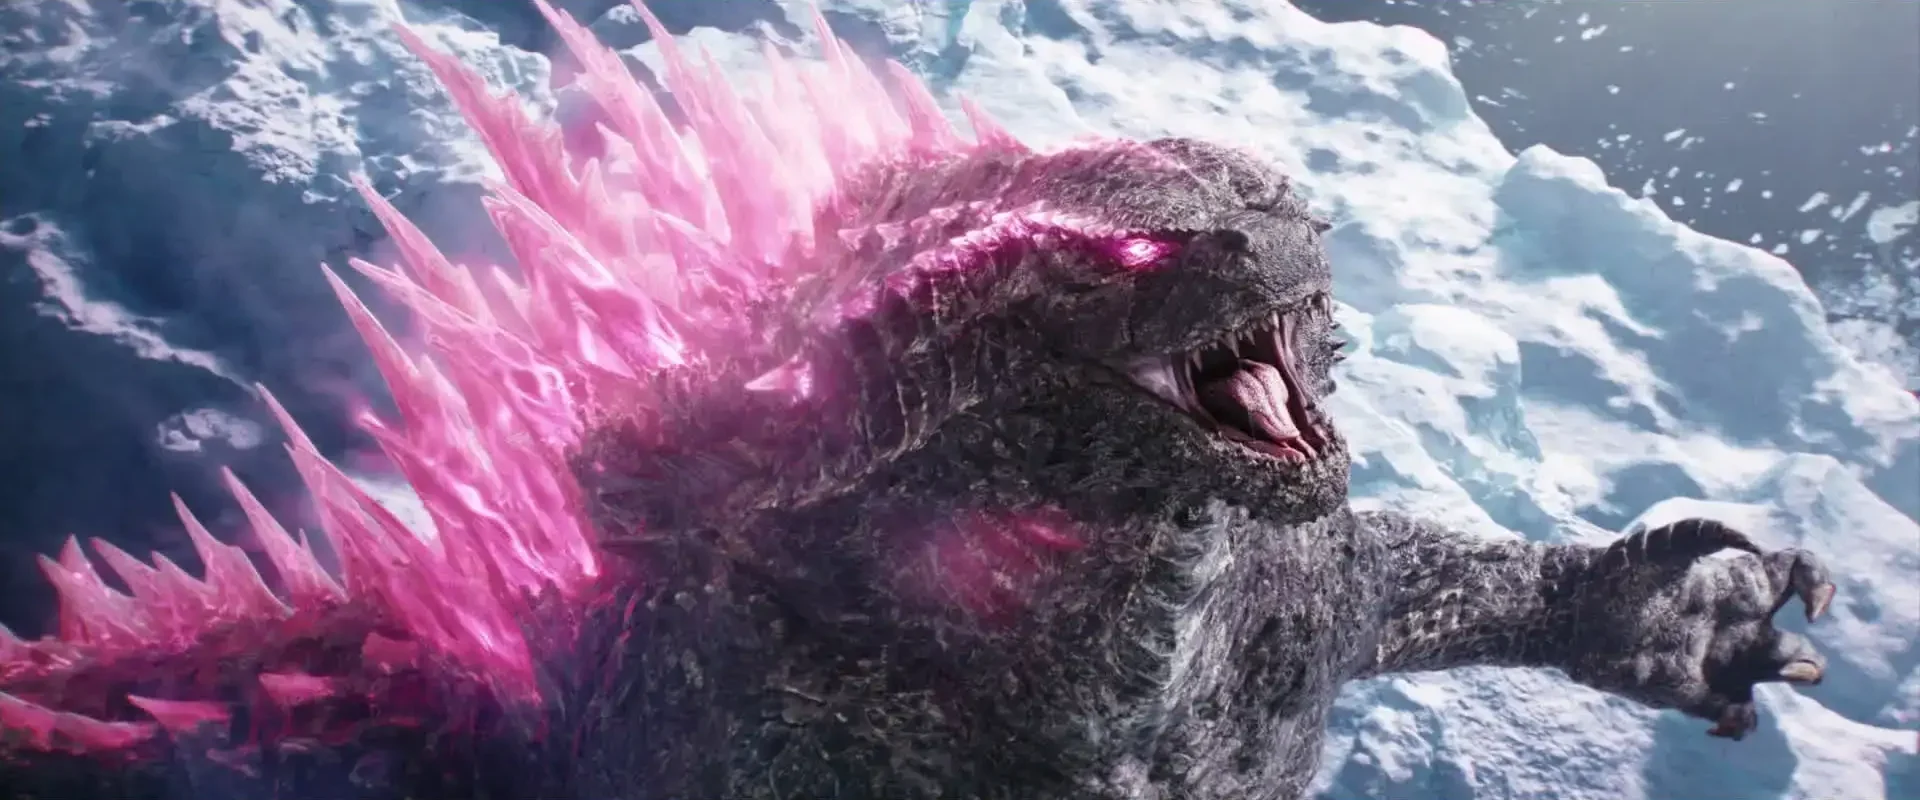 The history of Godzilla and King Kong movies